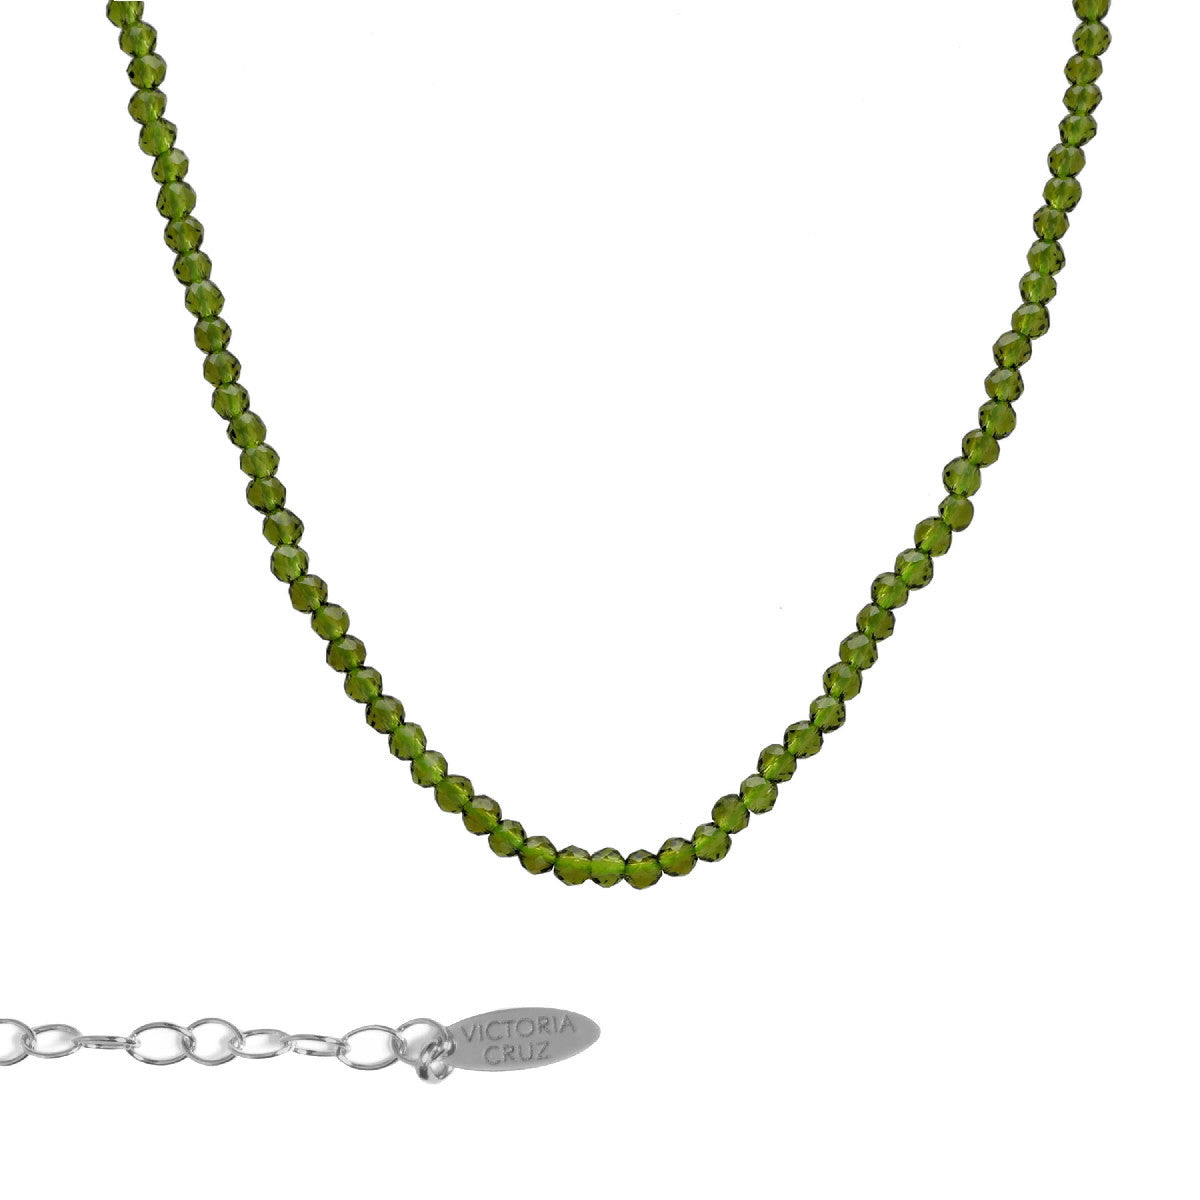 Collar corto mini cristales color verde elaborado en plata